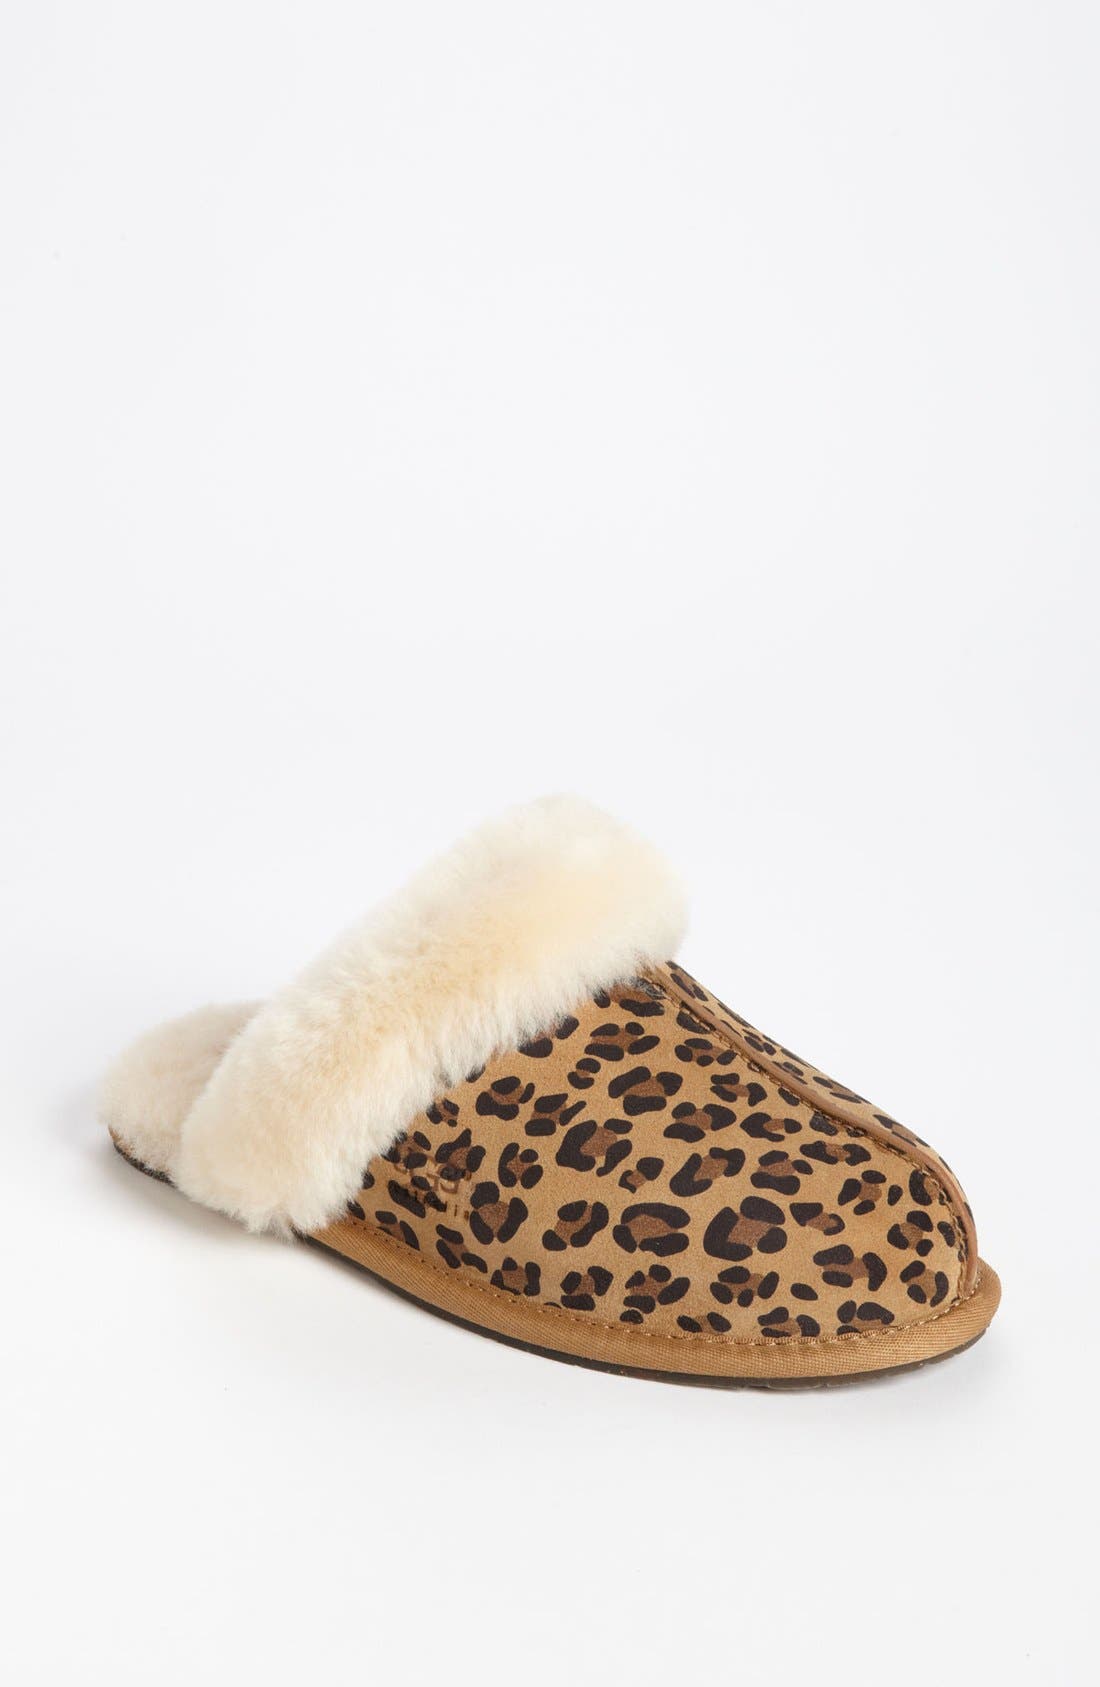 ugg leopard slippers nordstrom